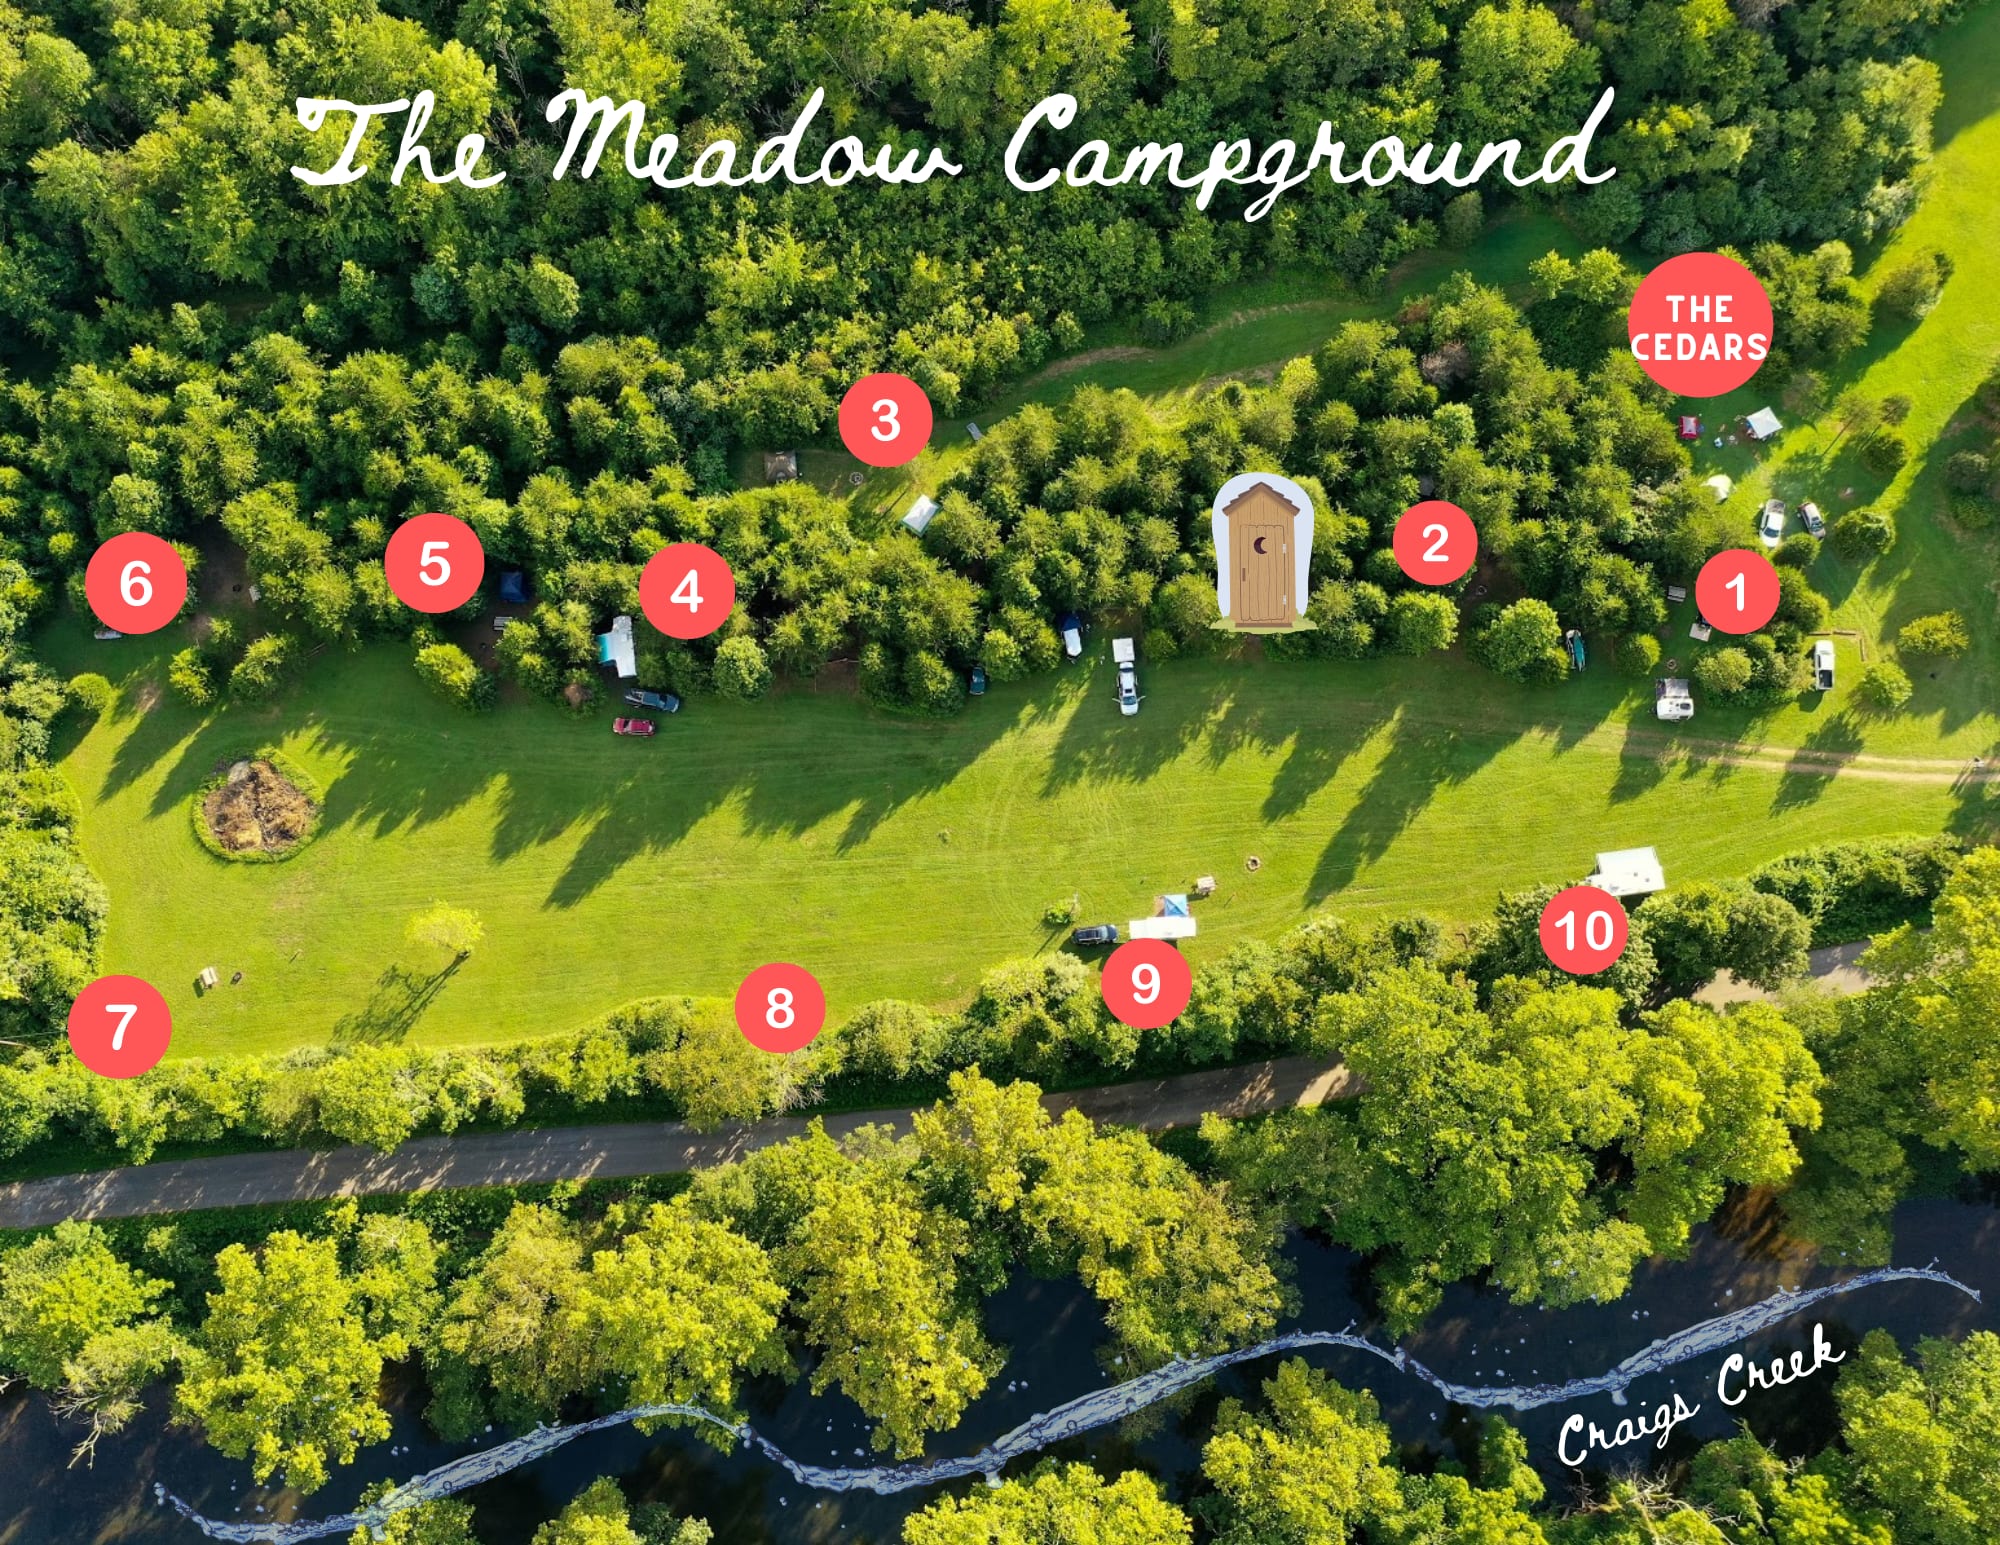 The Meadow 9 - open meadow